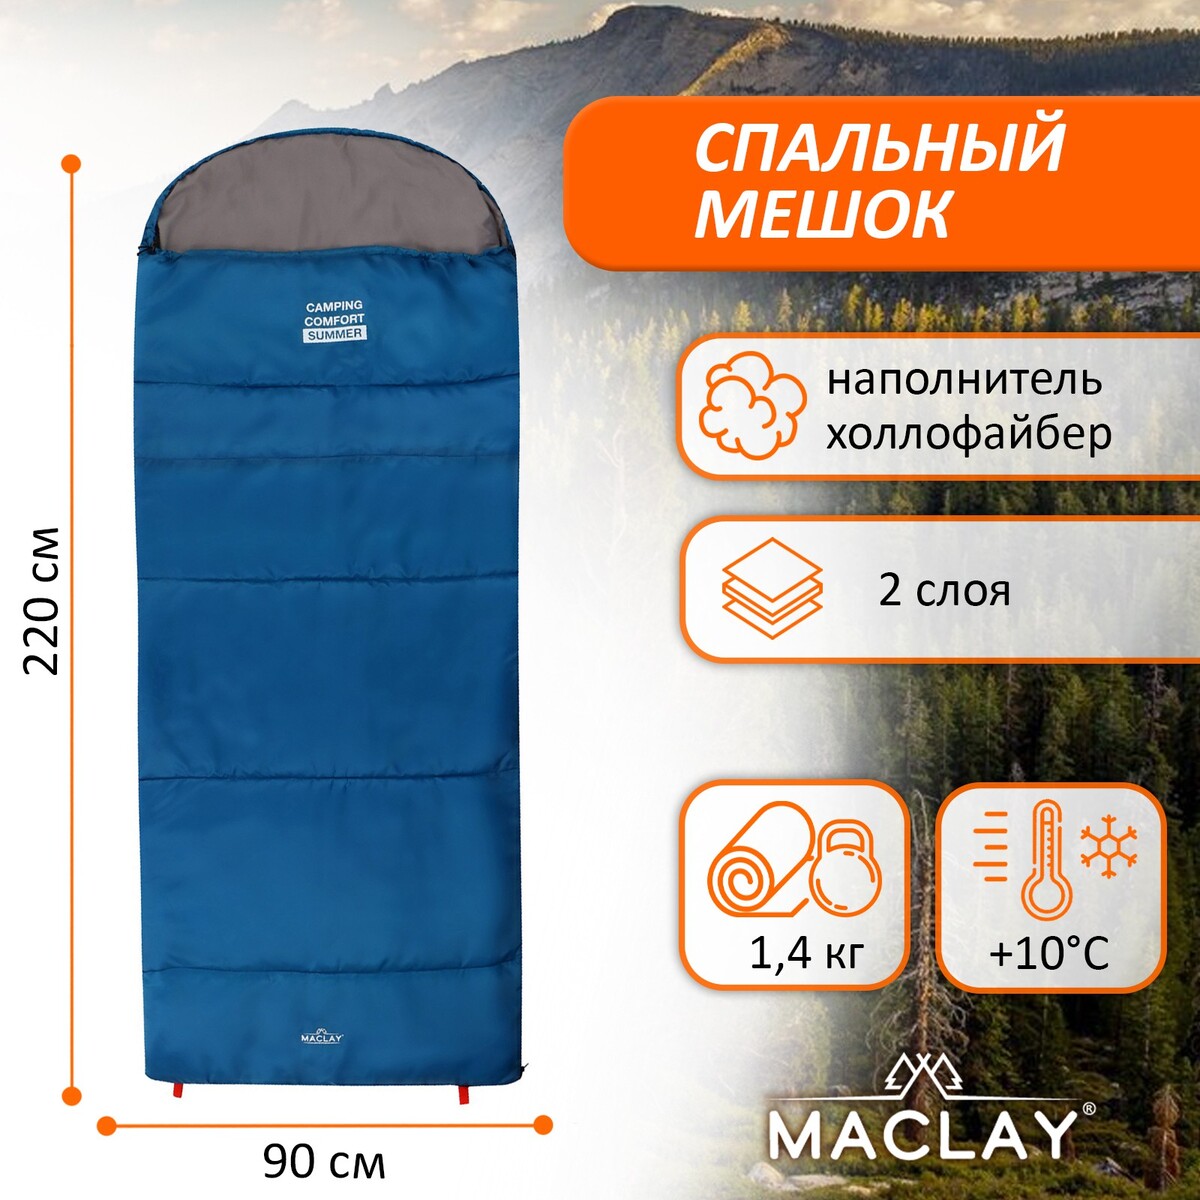 Спальный мешок maclay camping comfort summer, 2 слоя, левый, с подголовником, 220х90 см, +10/+25°с спальный мешок maclay 1 5 слоя 185х90 см 10 25°с эконом